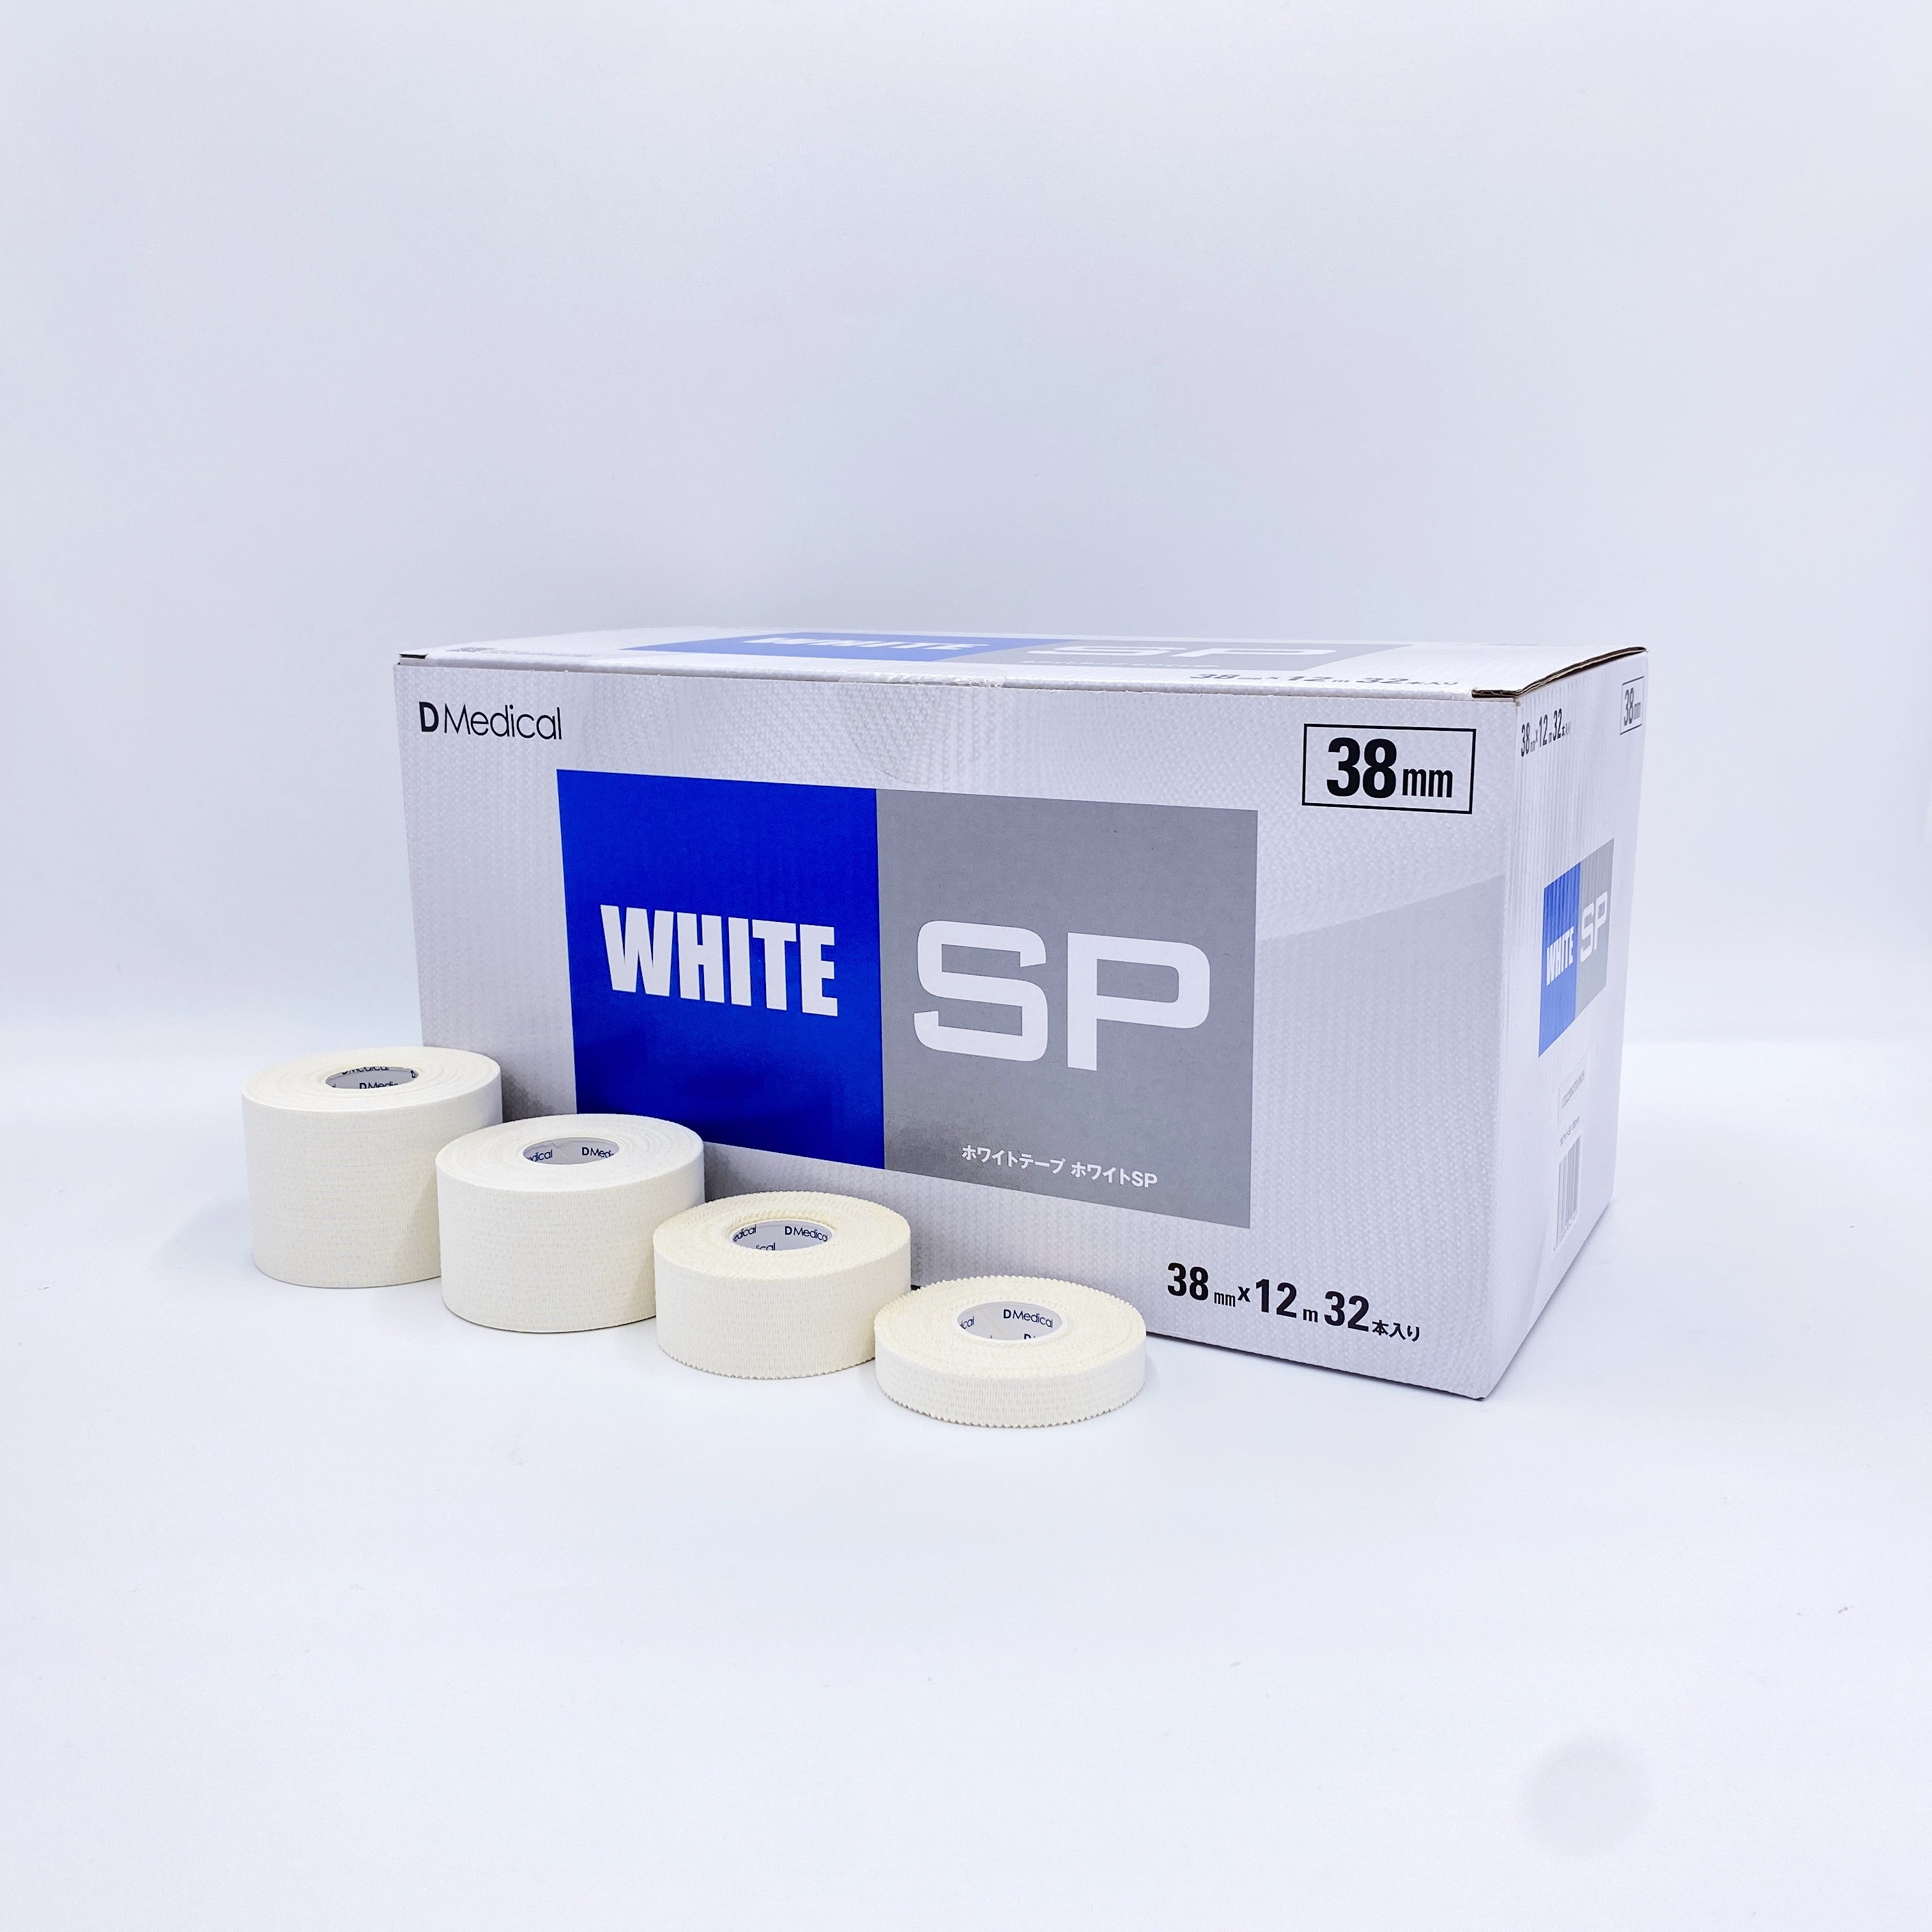 ホワイトSP – テーピングの購入はDMedical公式通販